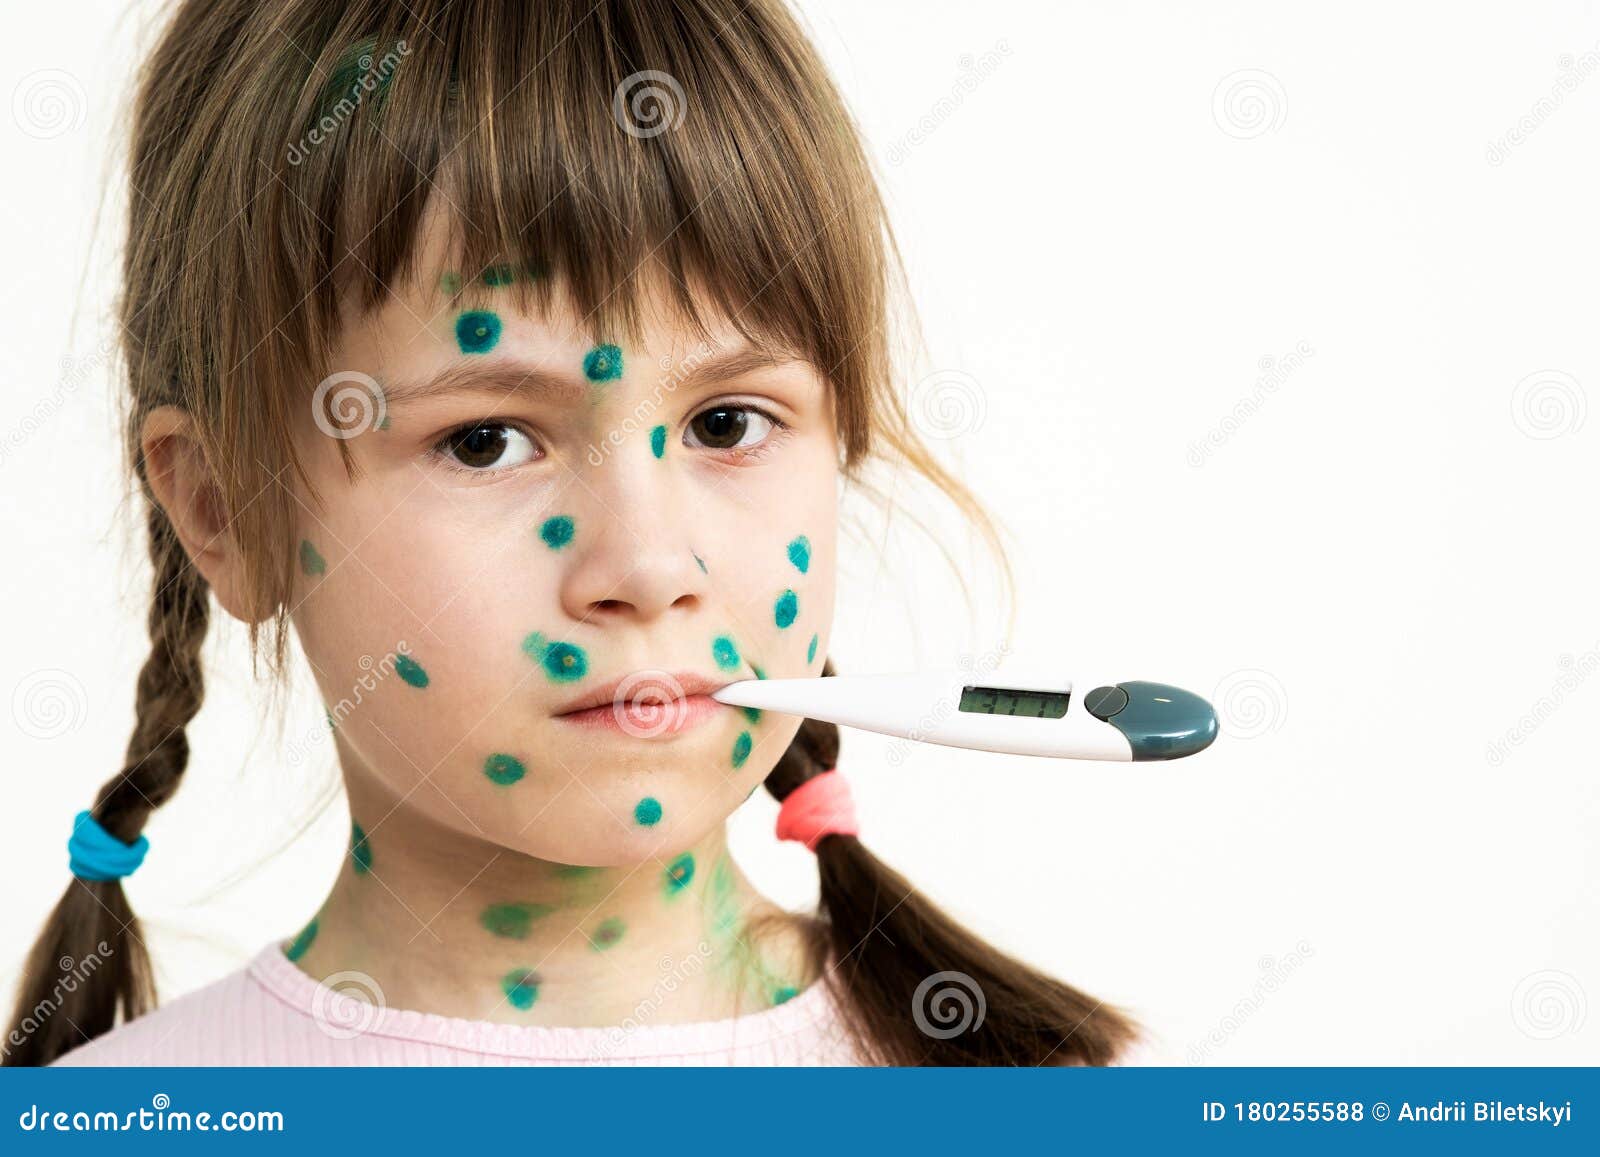 水痘图片是什么样的（春天孩子容易被传染水痘，这里有一份水痘的知识要点，家长必知） | 说明书网